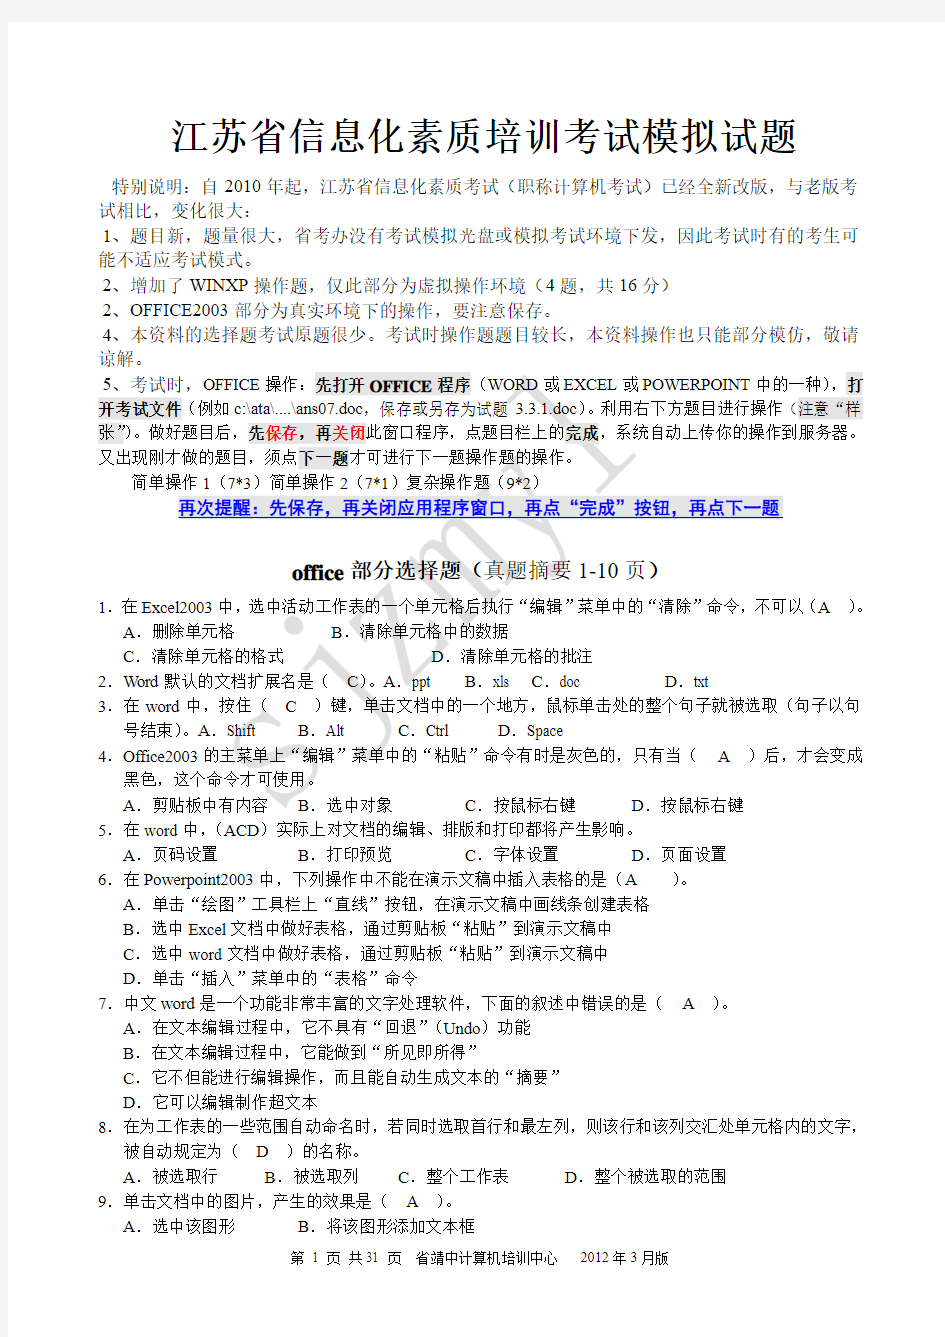 江苏省职称计算机考试模拟题2012年04(修改+去选择)